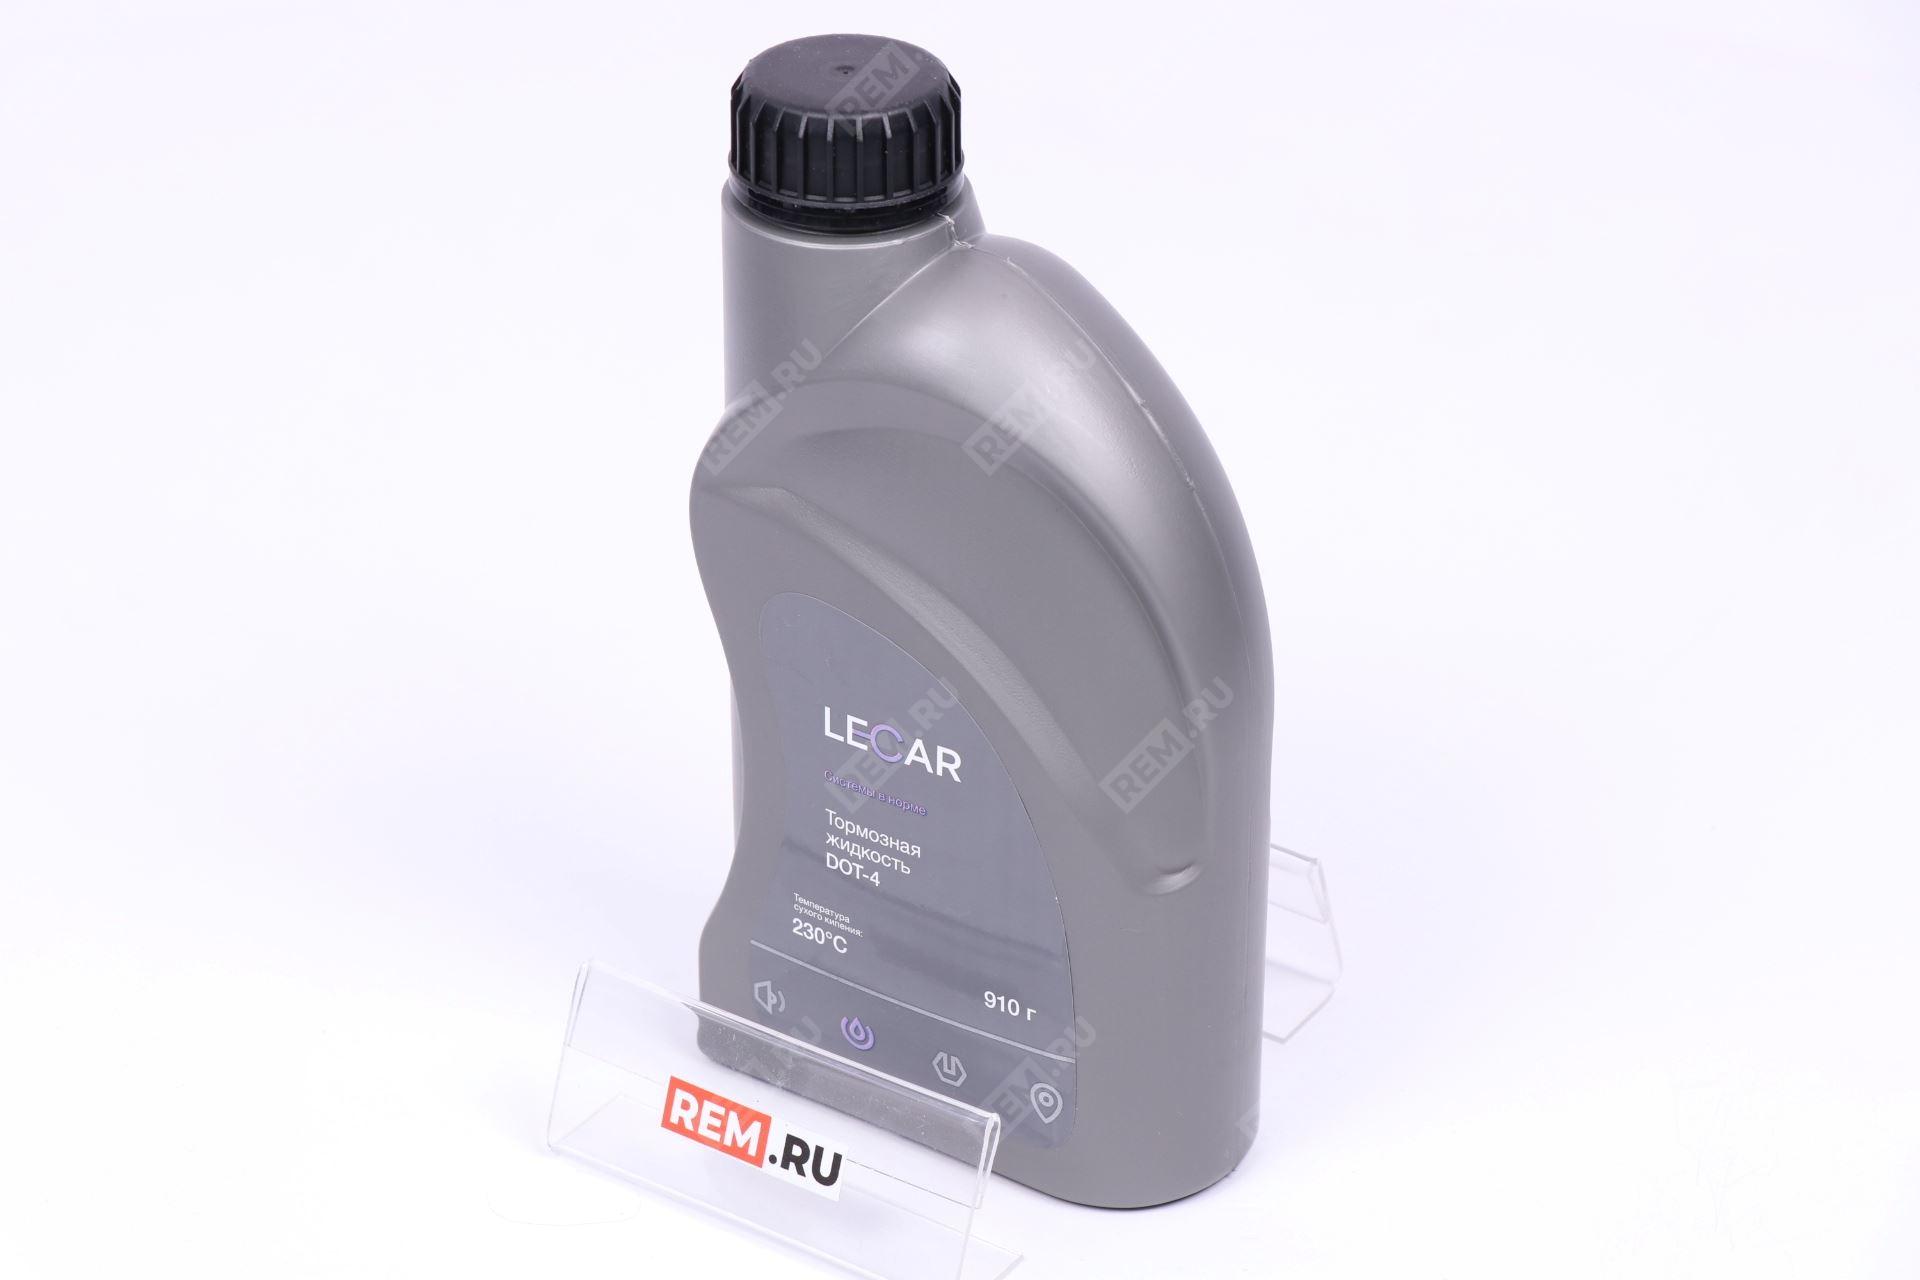  LECAR000021410 жидкость тормозная lecar dot-4, 0.91л